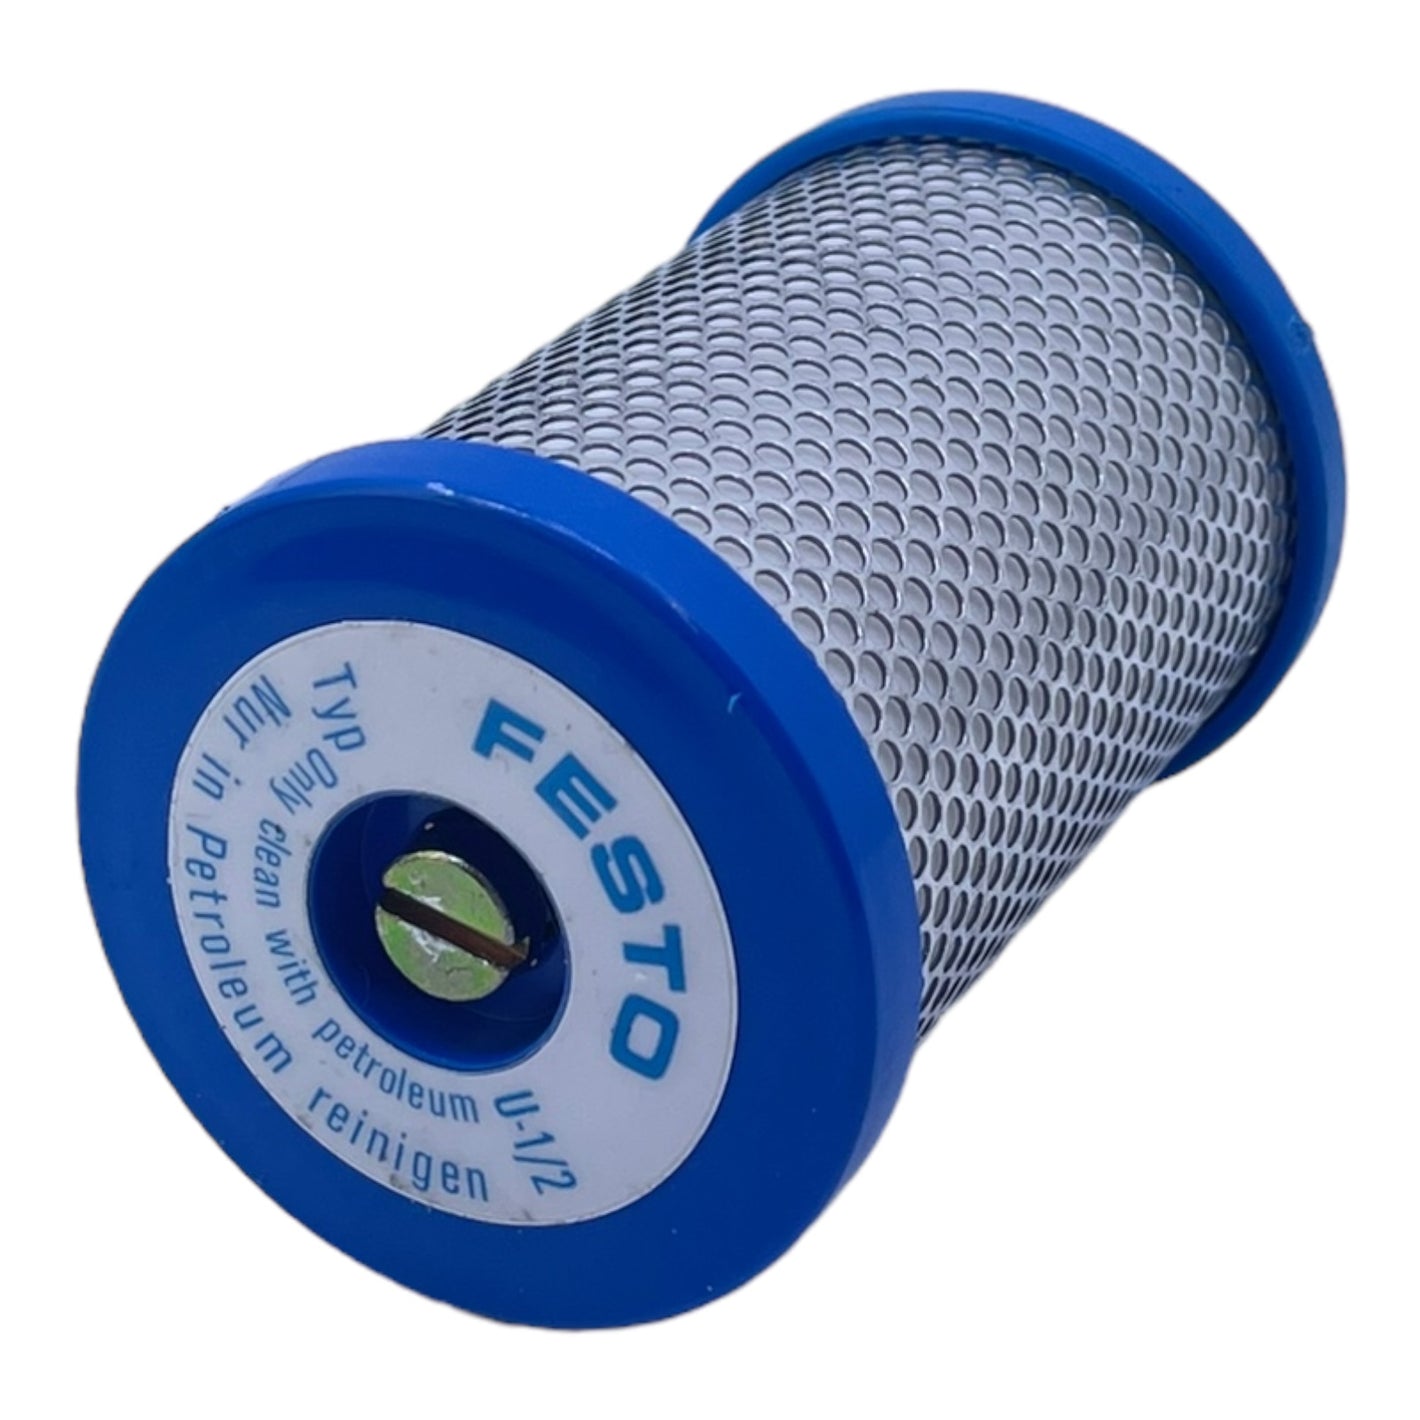 Festo U-1/2 Schalldämpfer 2310 Pneuamtik Schalldrämpfer industrieller Einsatz